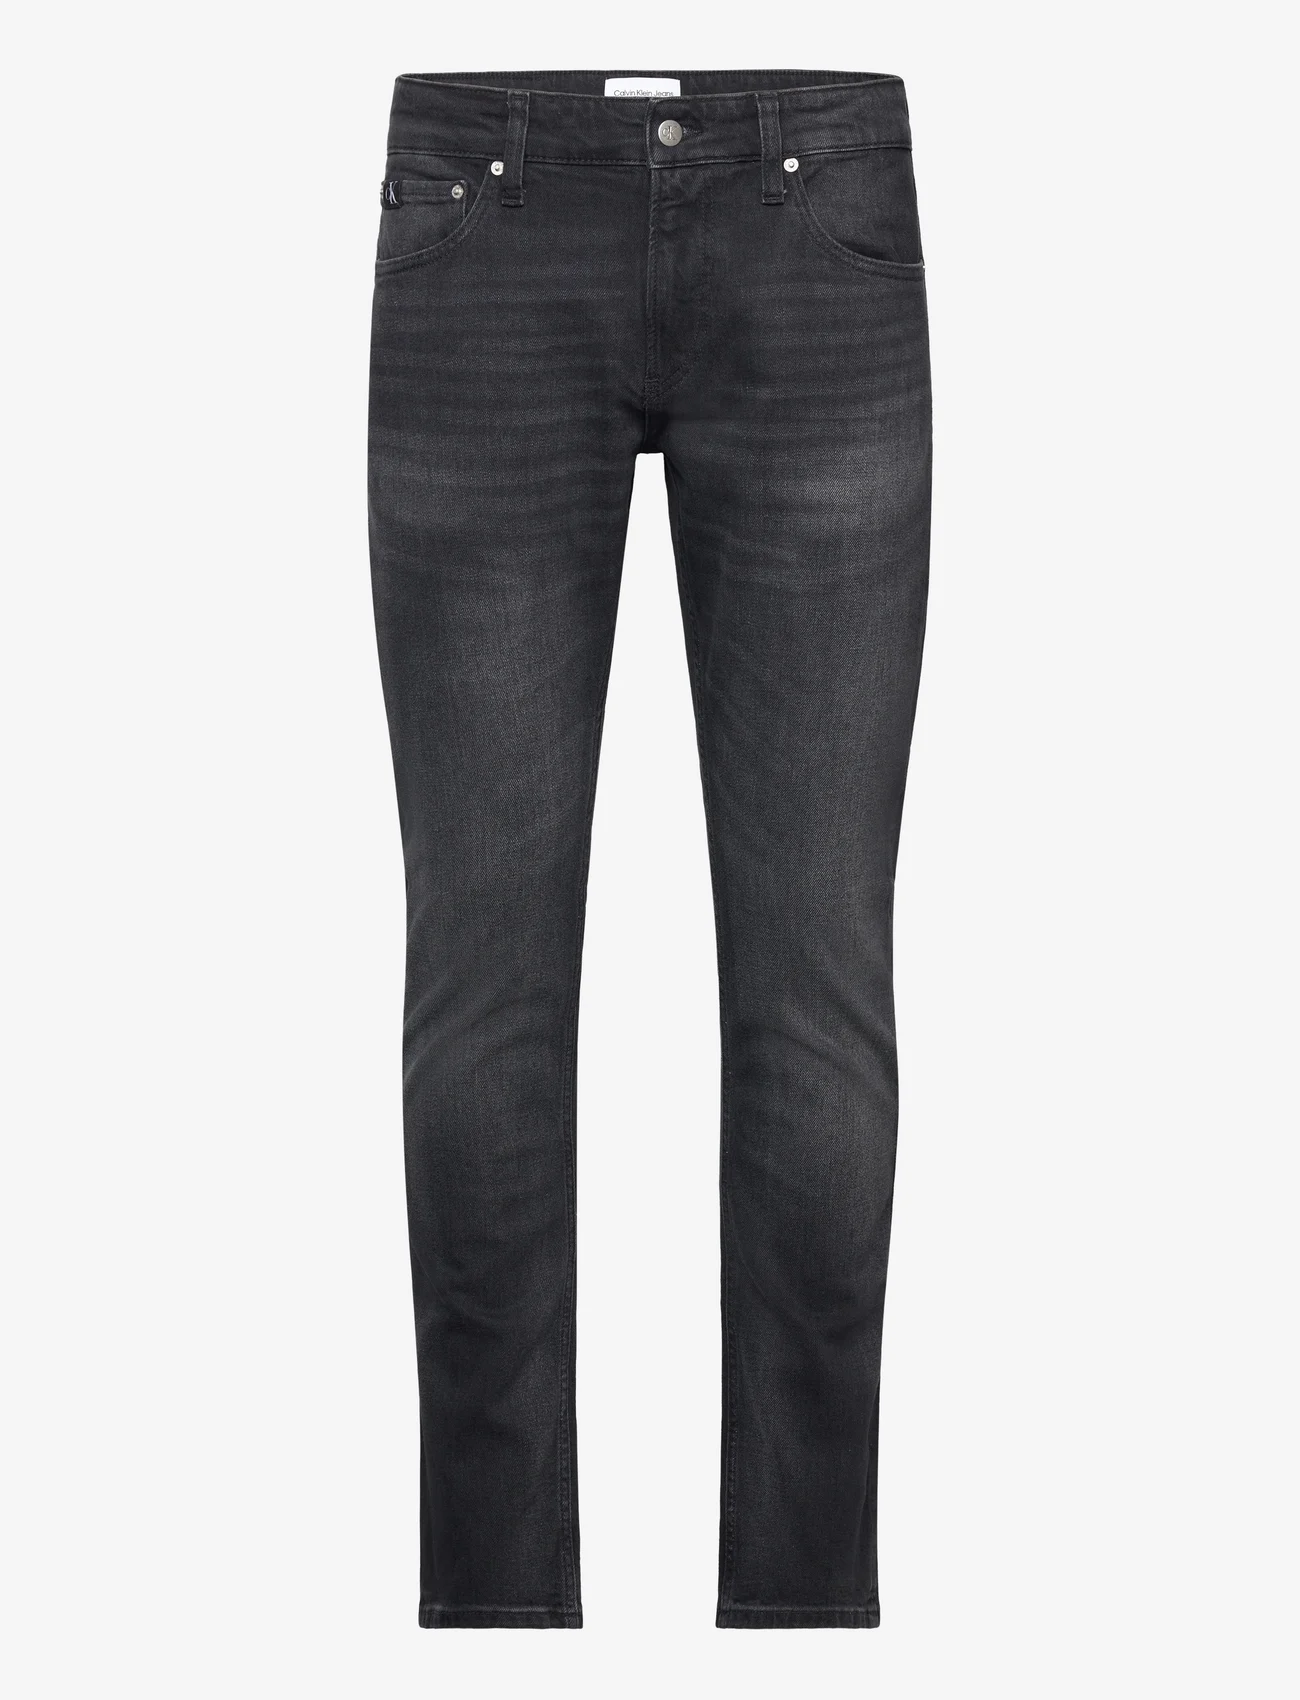 Calvin Klein Jeans - SLIM - slim jeans - denim black - 0